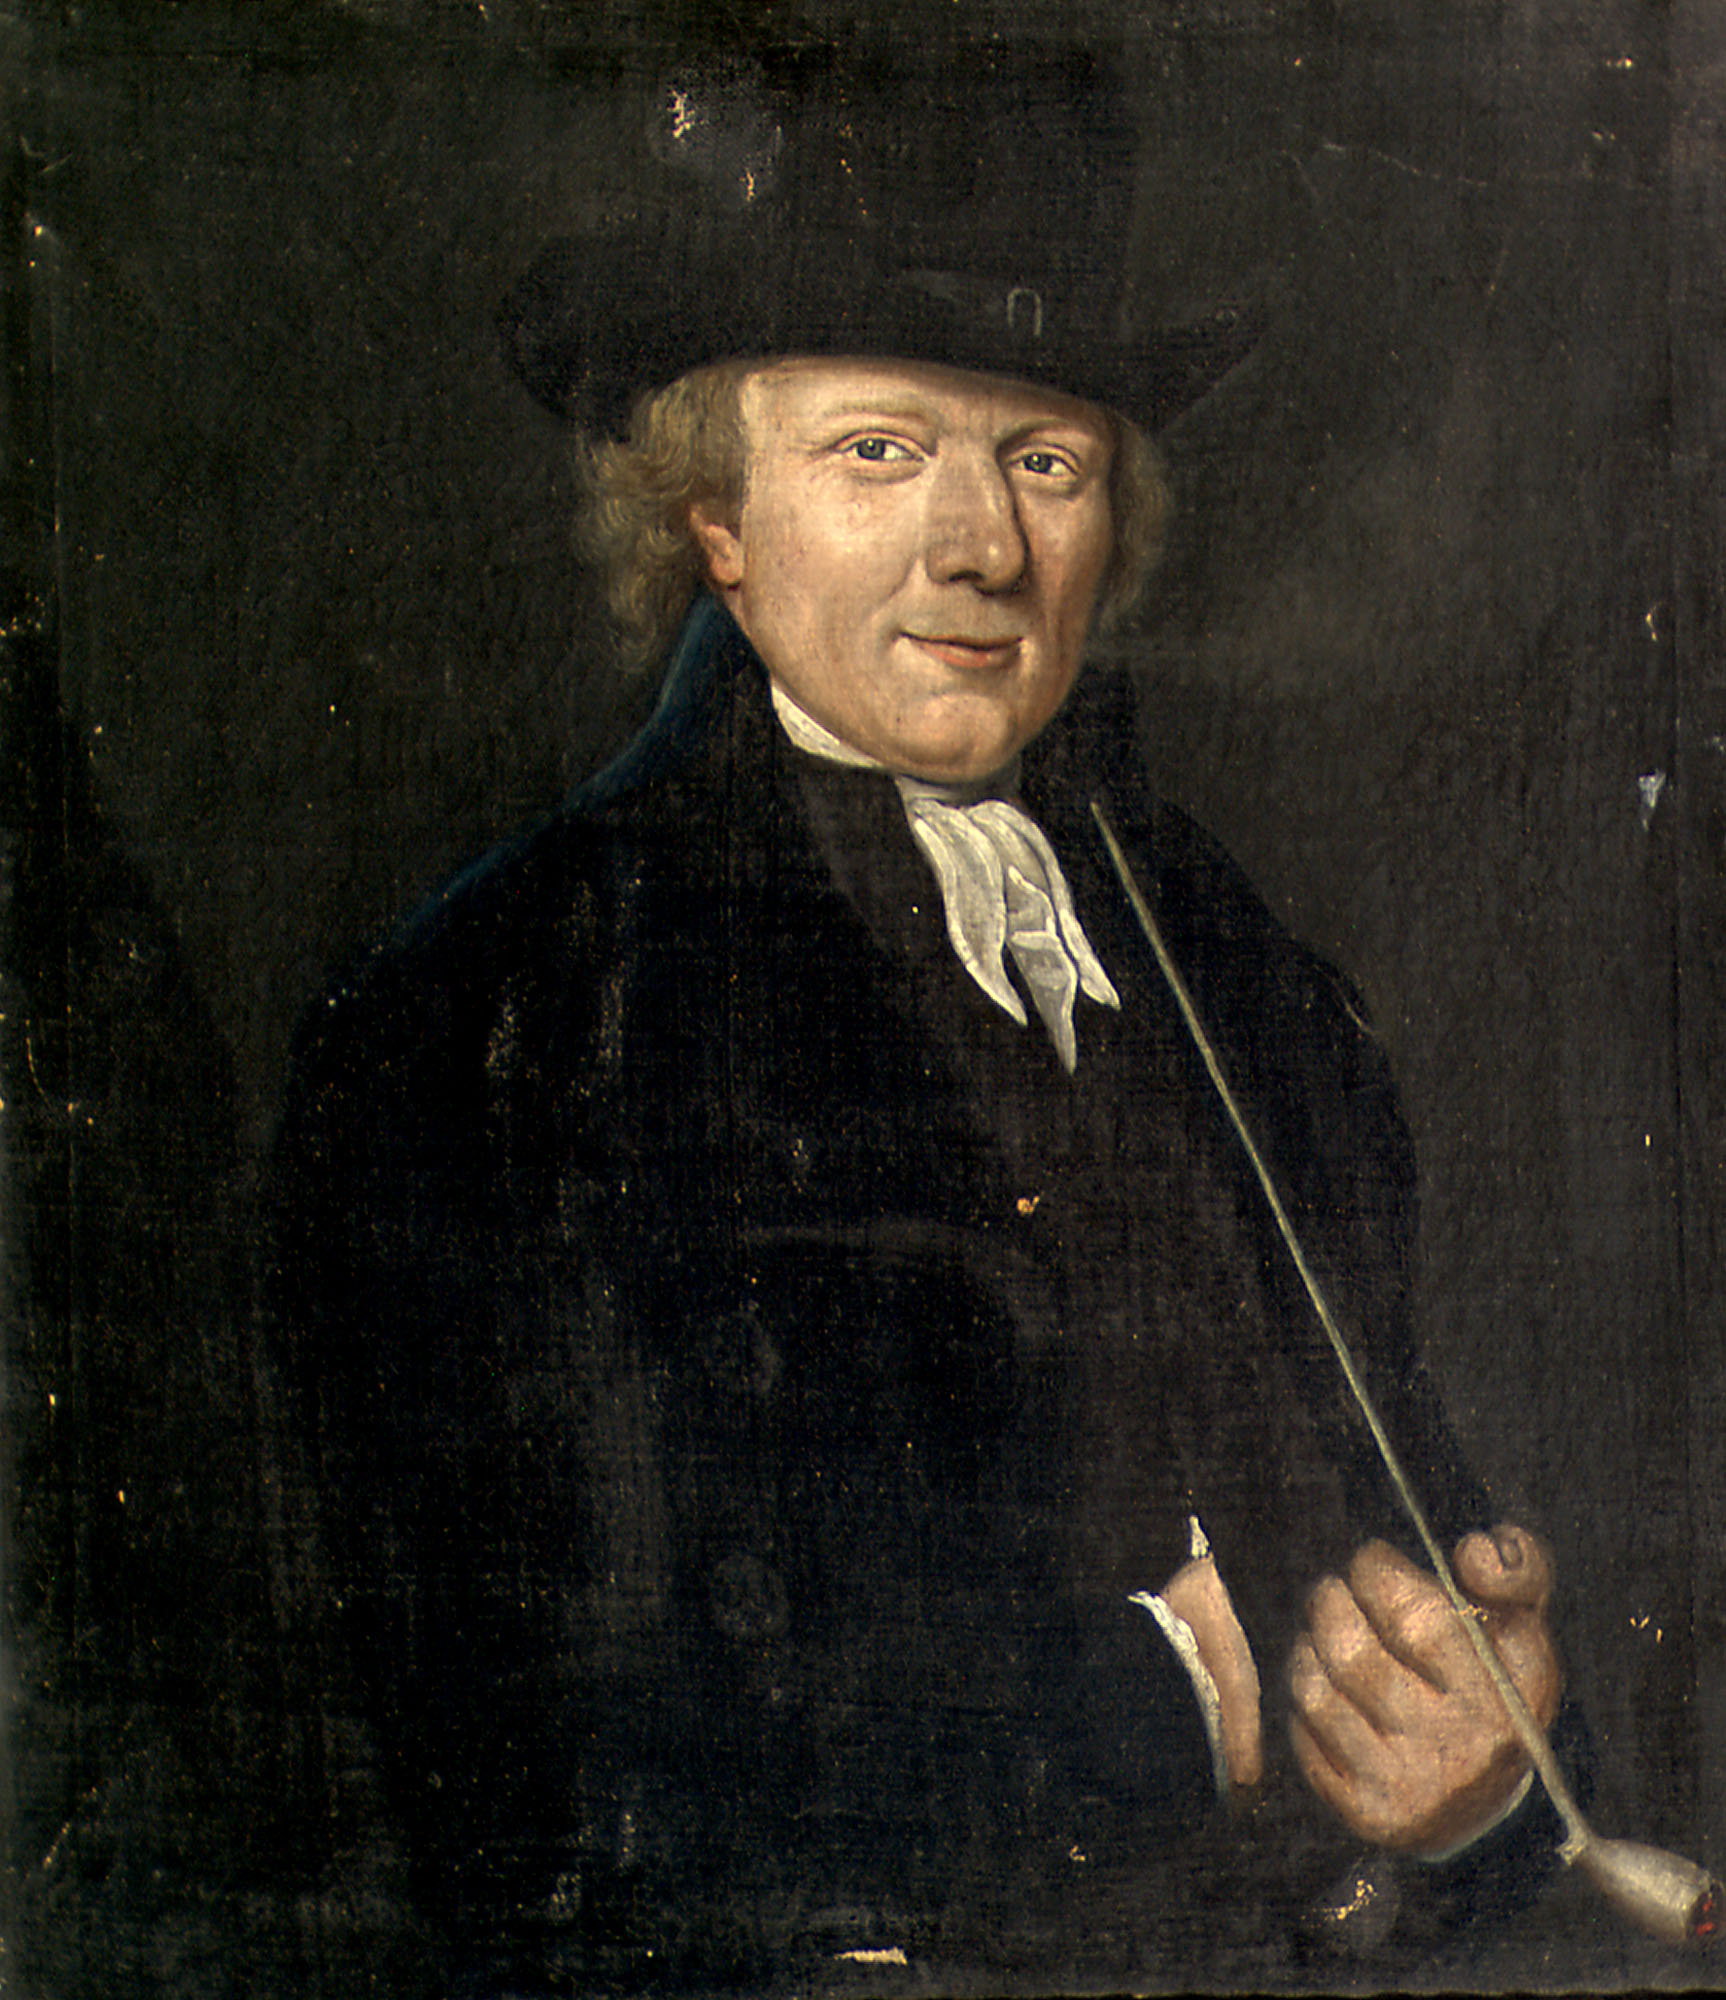 Binnenvader van het gasthuis Mispelblom, eind 18e eeuw.